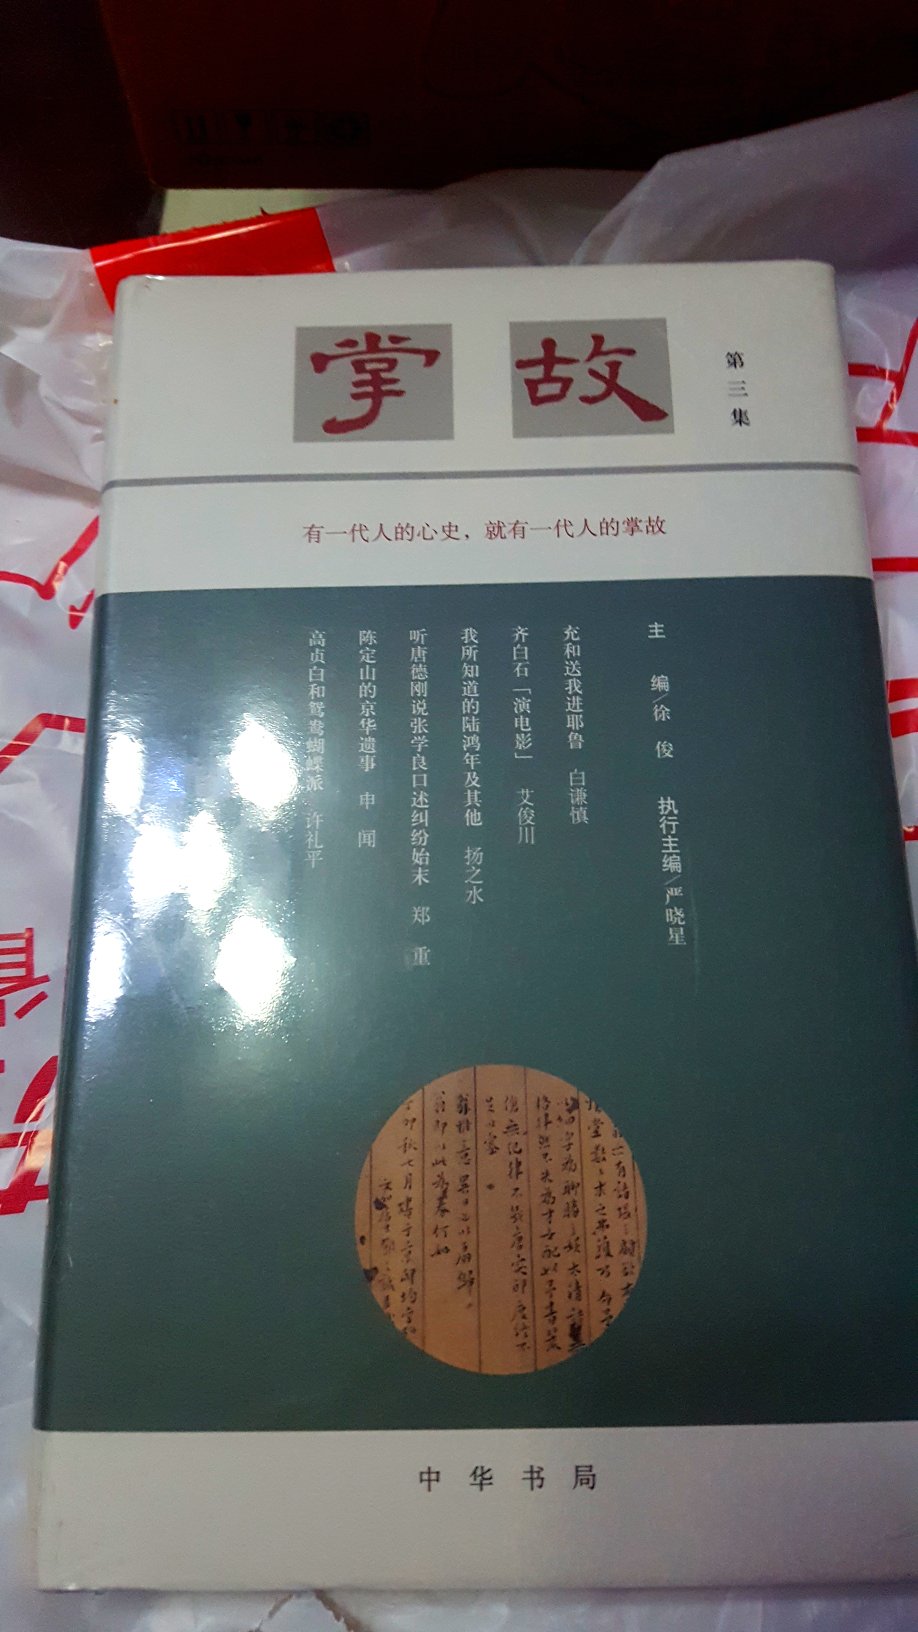 《掌故》是中华书局出版的杂志式的系列图书，源自四十多年前香港《掌故》月刊，所刊文章都是一些大家追记往事以及对历史的考察。